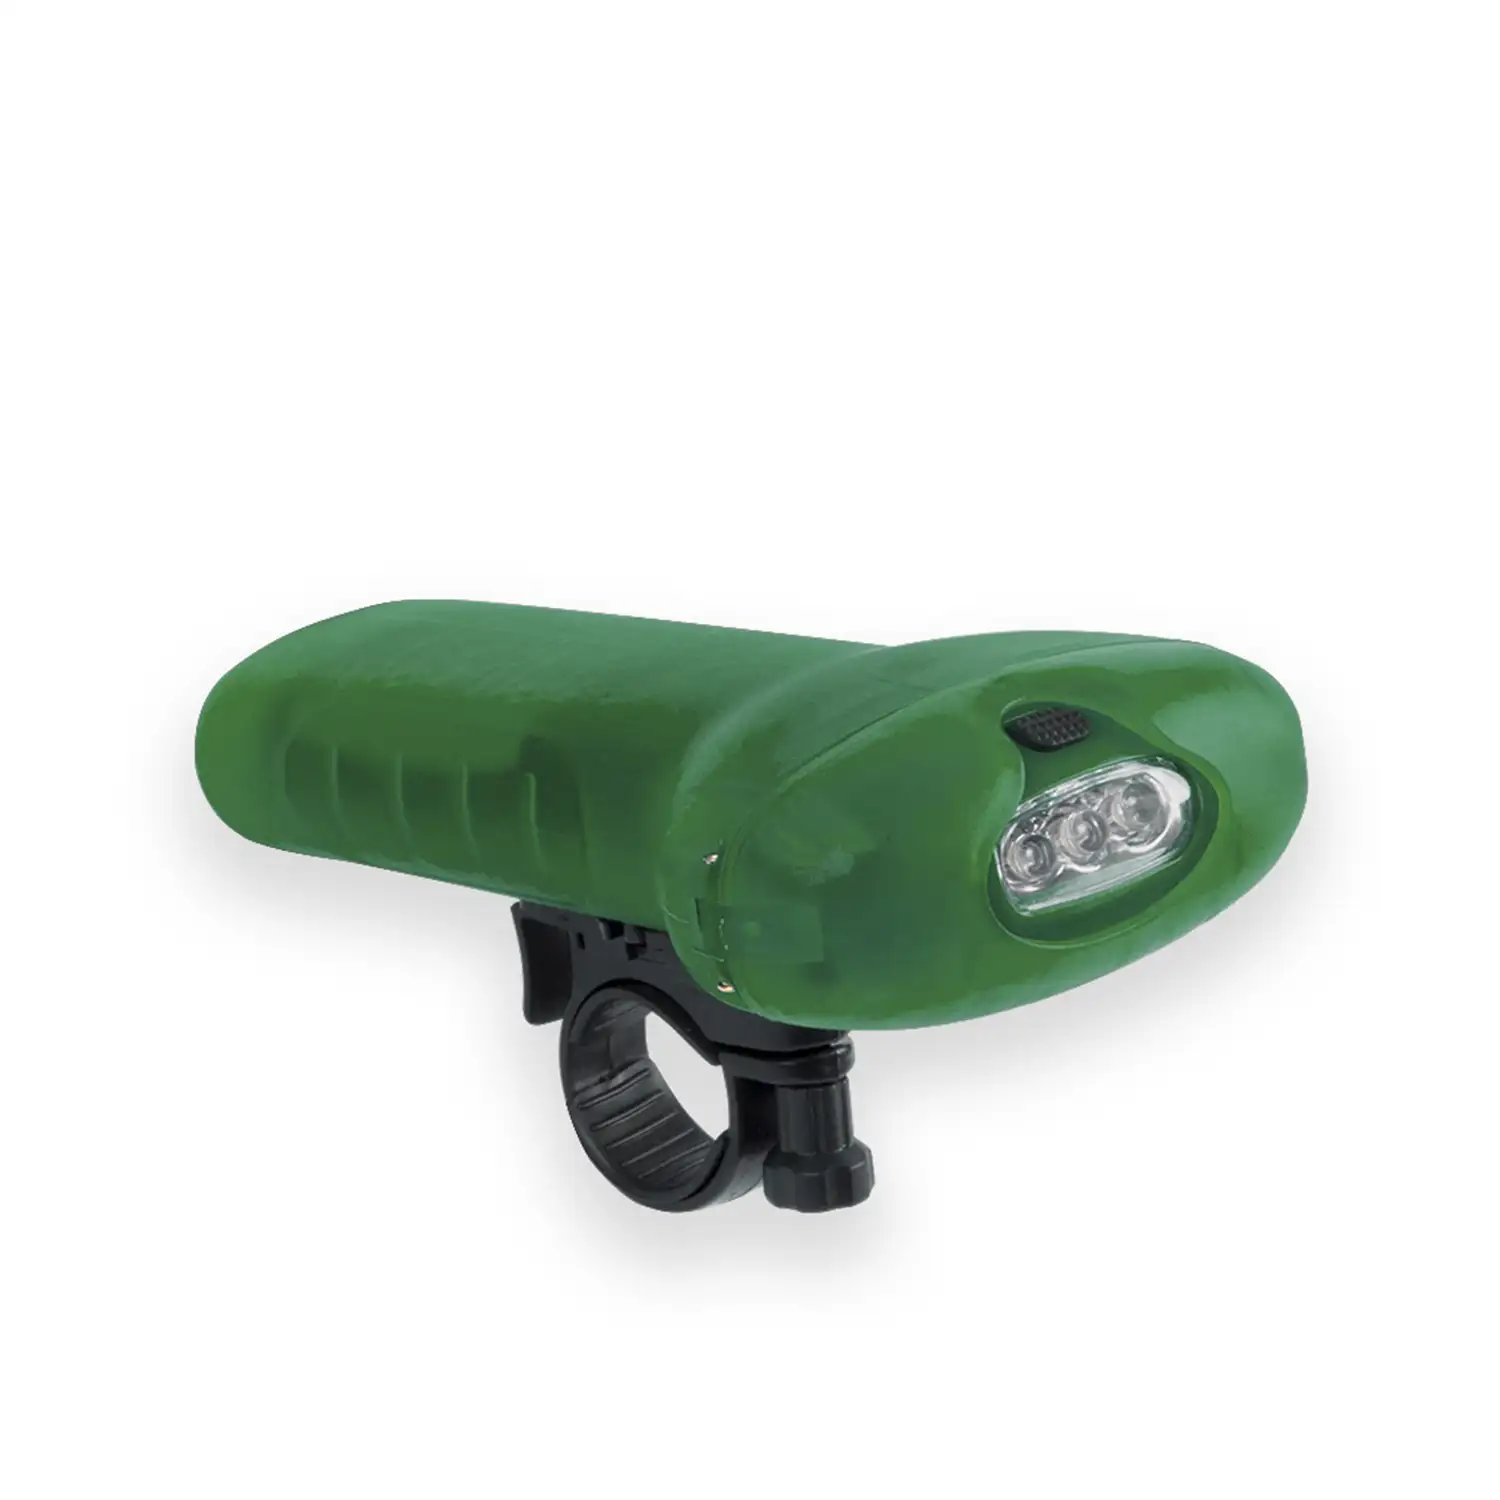 Linterna Moltar para manillar de bicicleta, con 3 leds y 2 posiciones de iluminación. Modo de uso como luz frontal con goma ajustable.